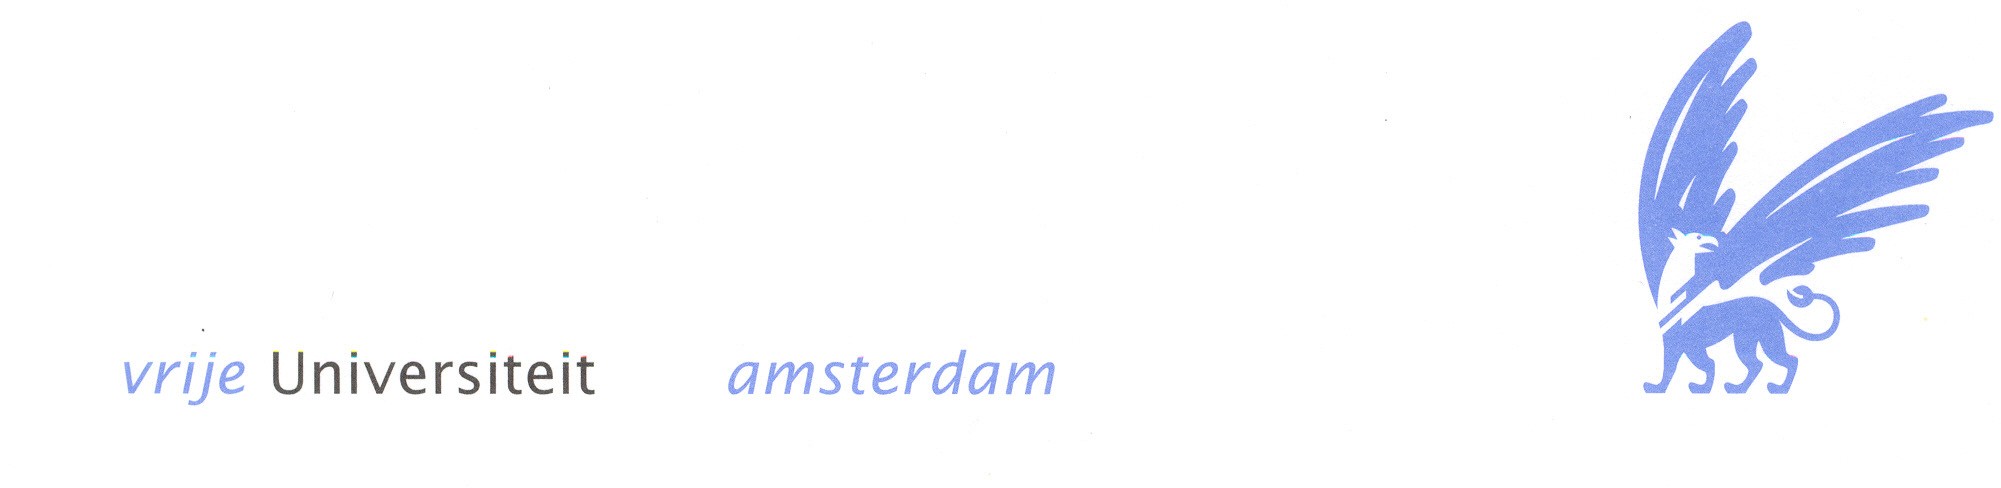 vrije universiteit amsterdam logo 09